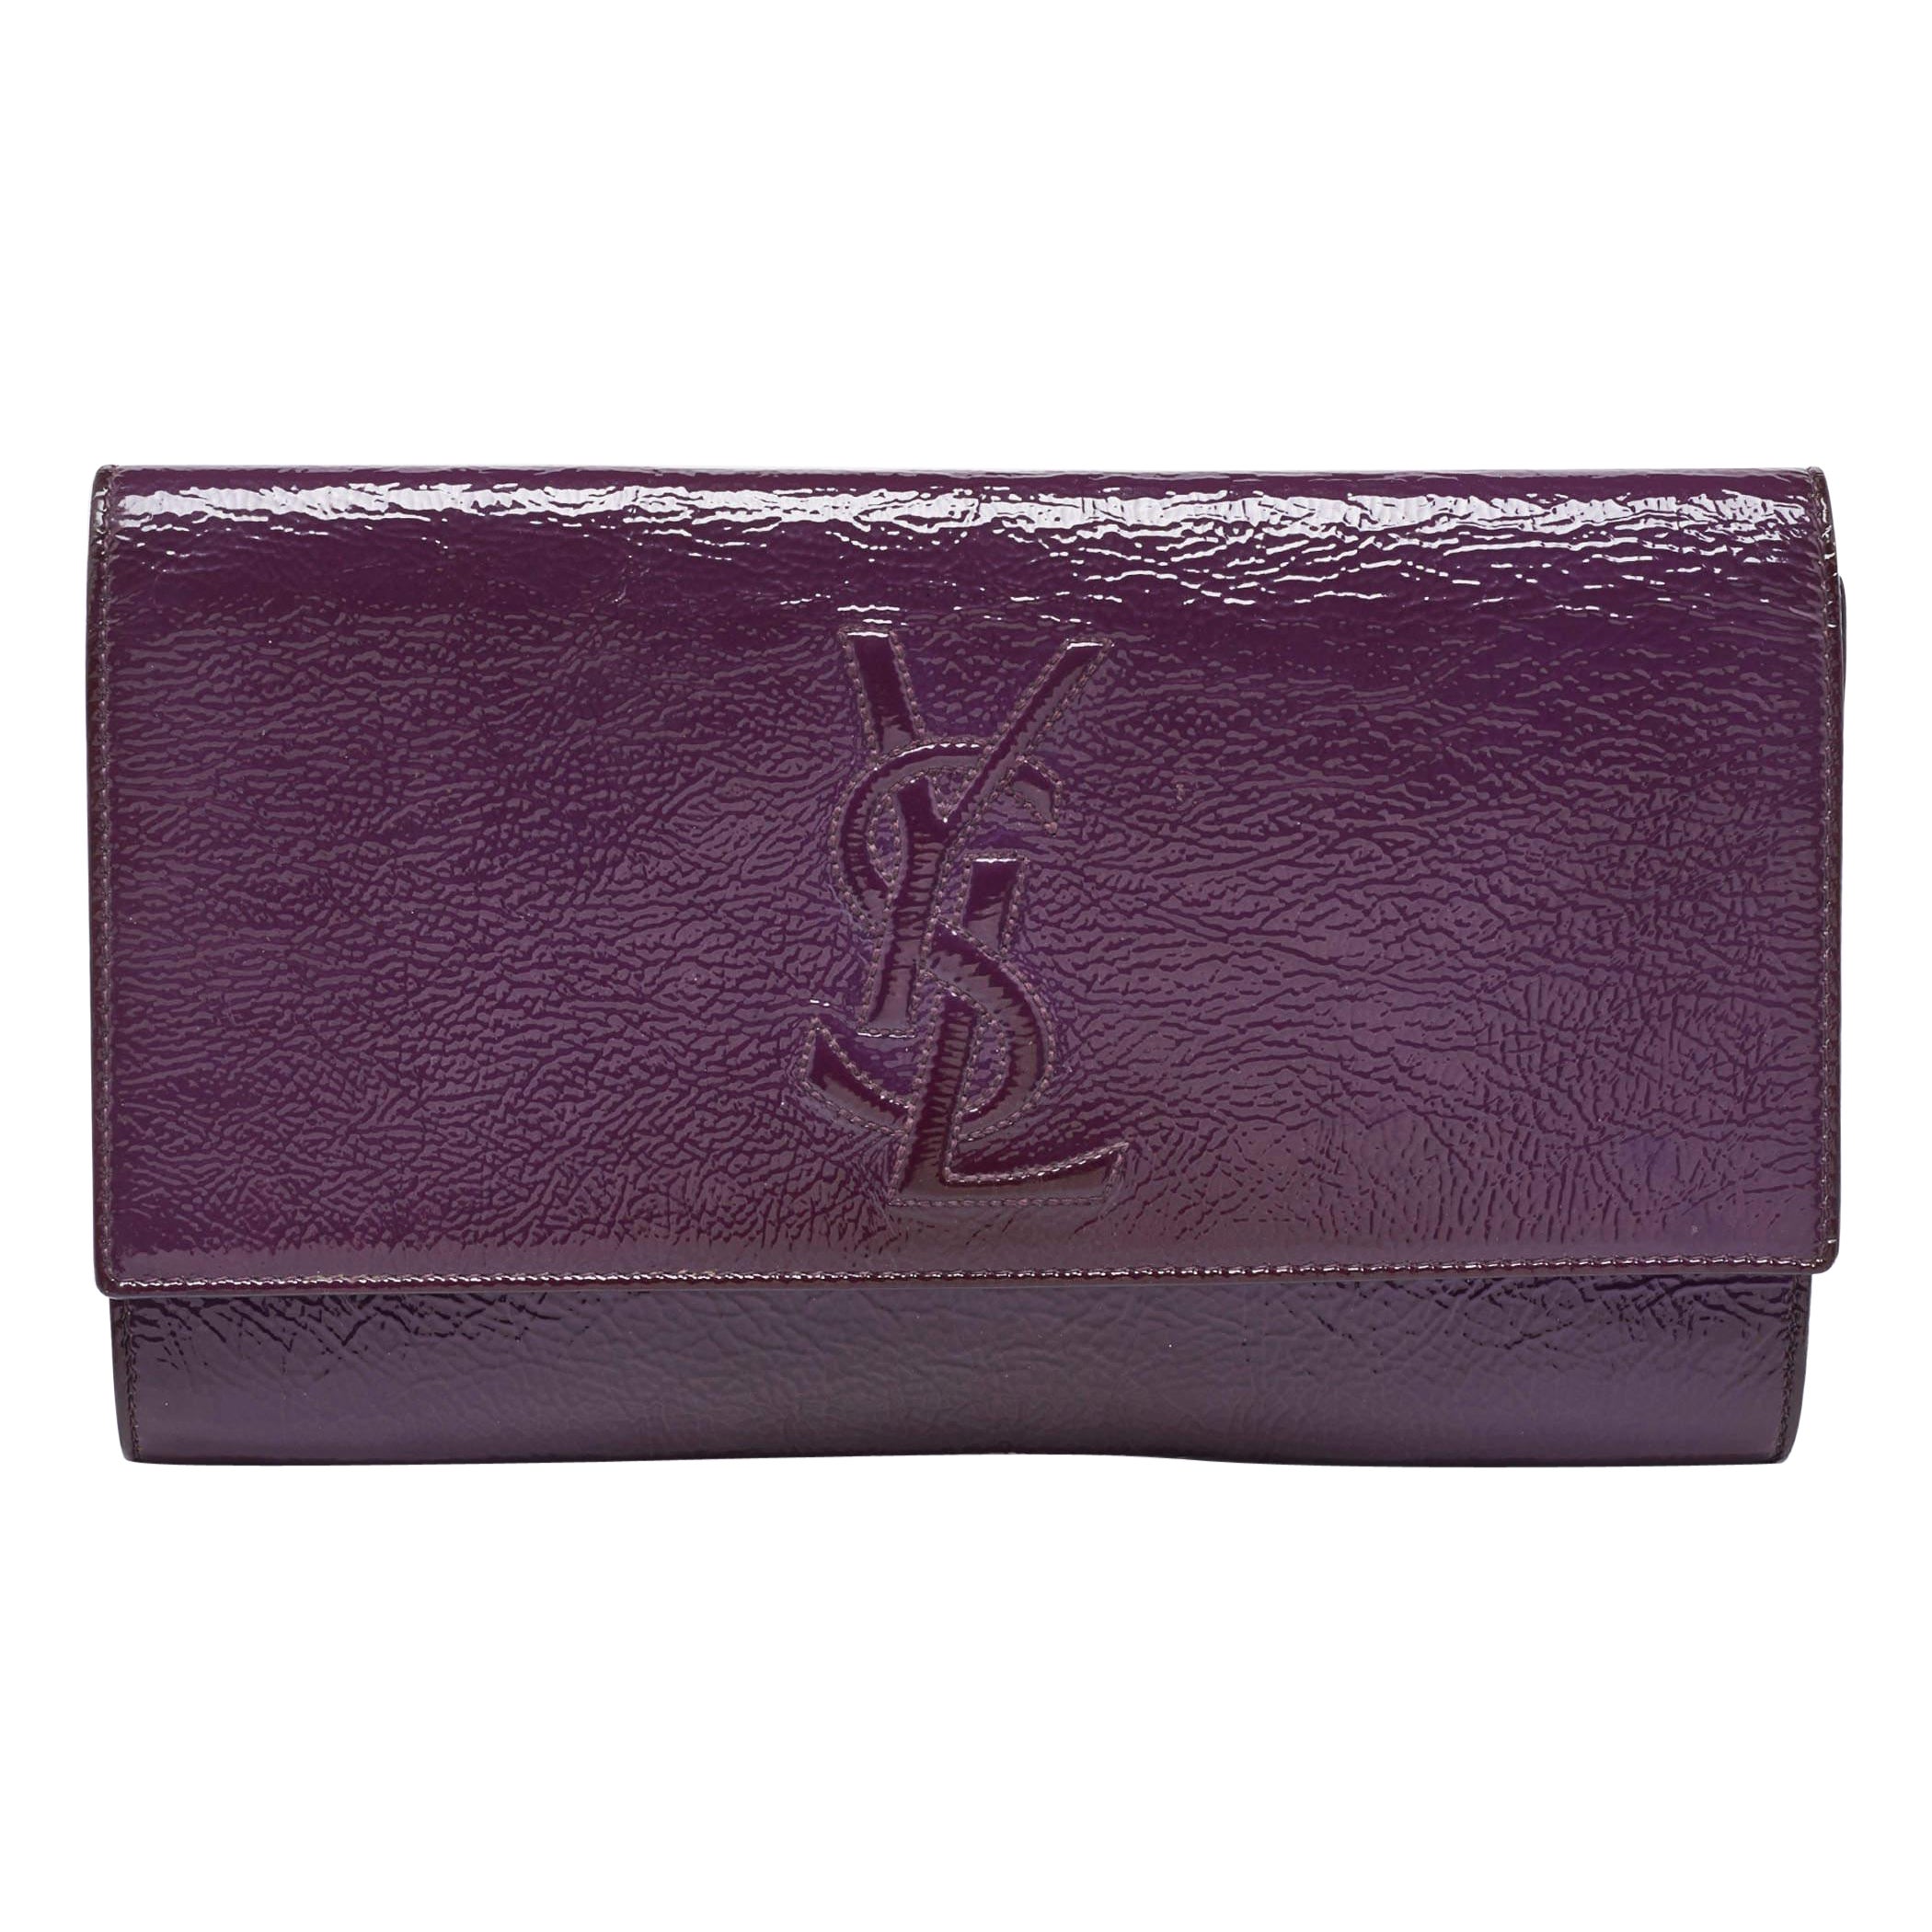 Yves Saint Laurent Purple Patent Leather Belle De Jour Flap Clutch For Sale